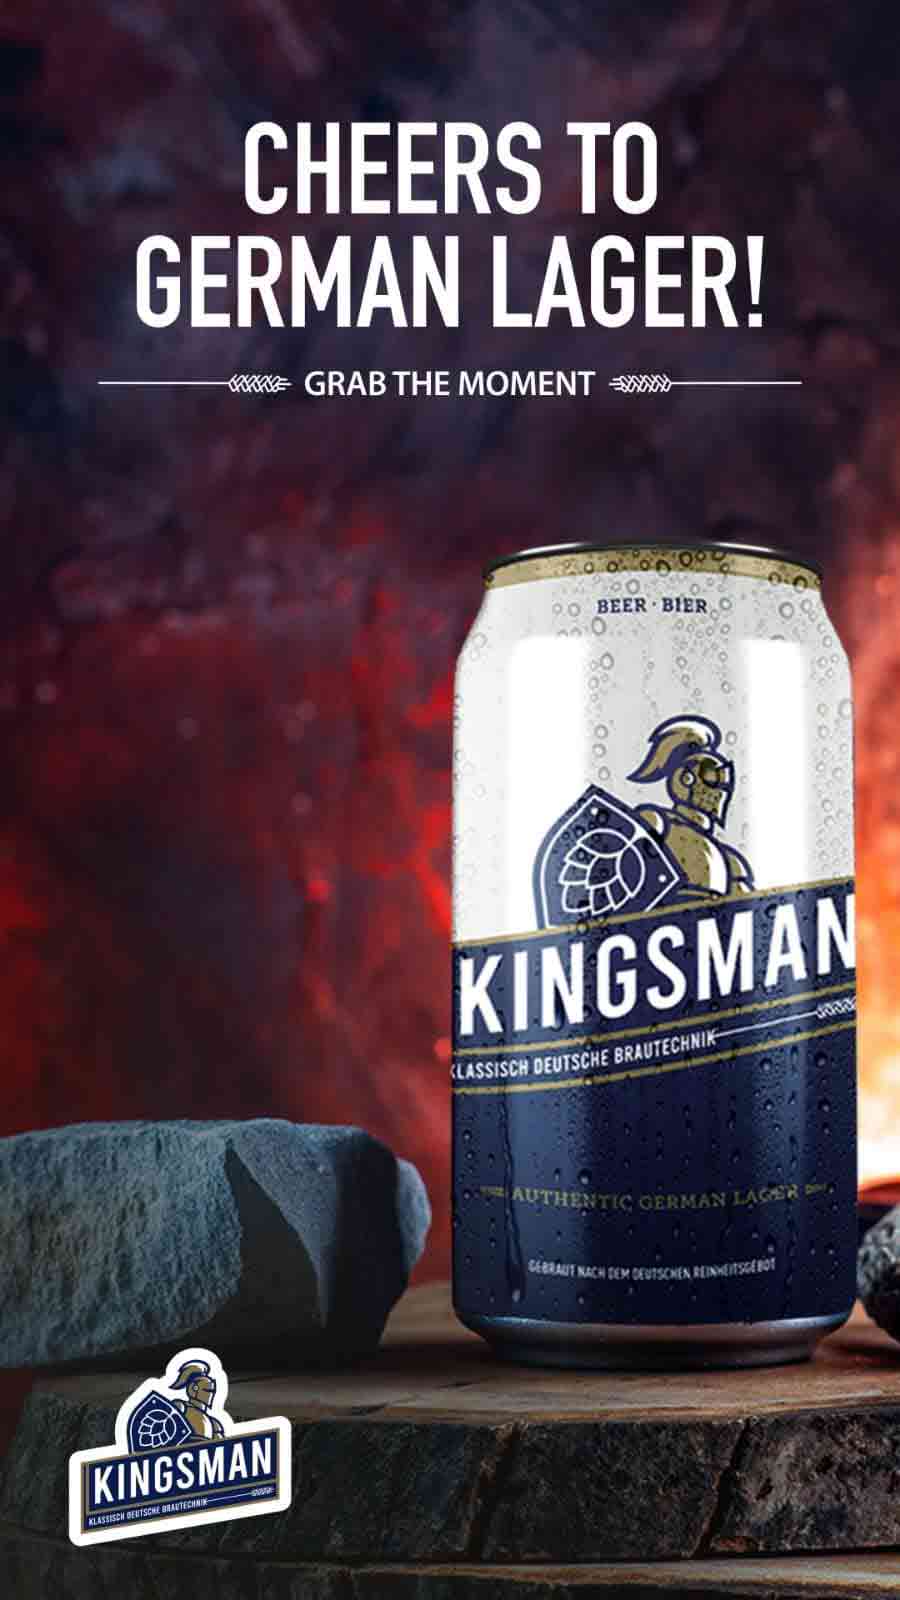 Cheers to our German lager Kingsman beer